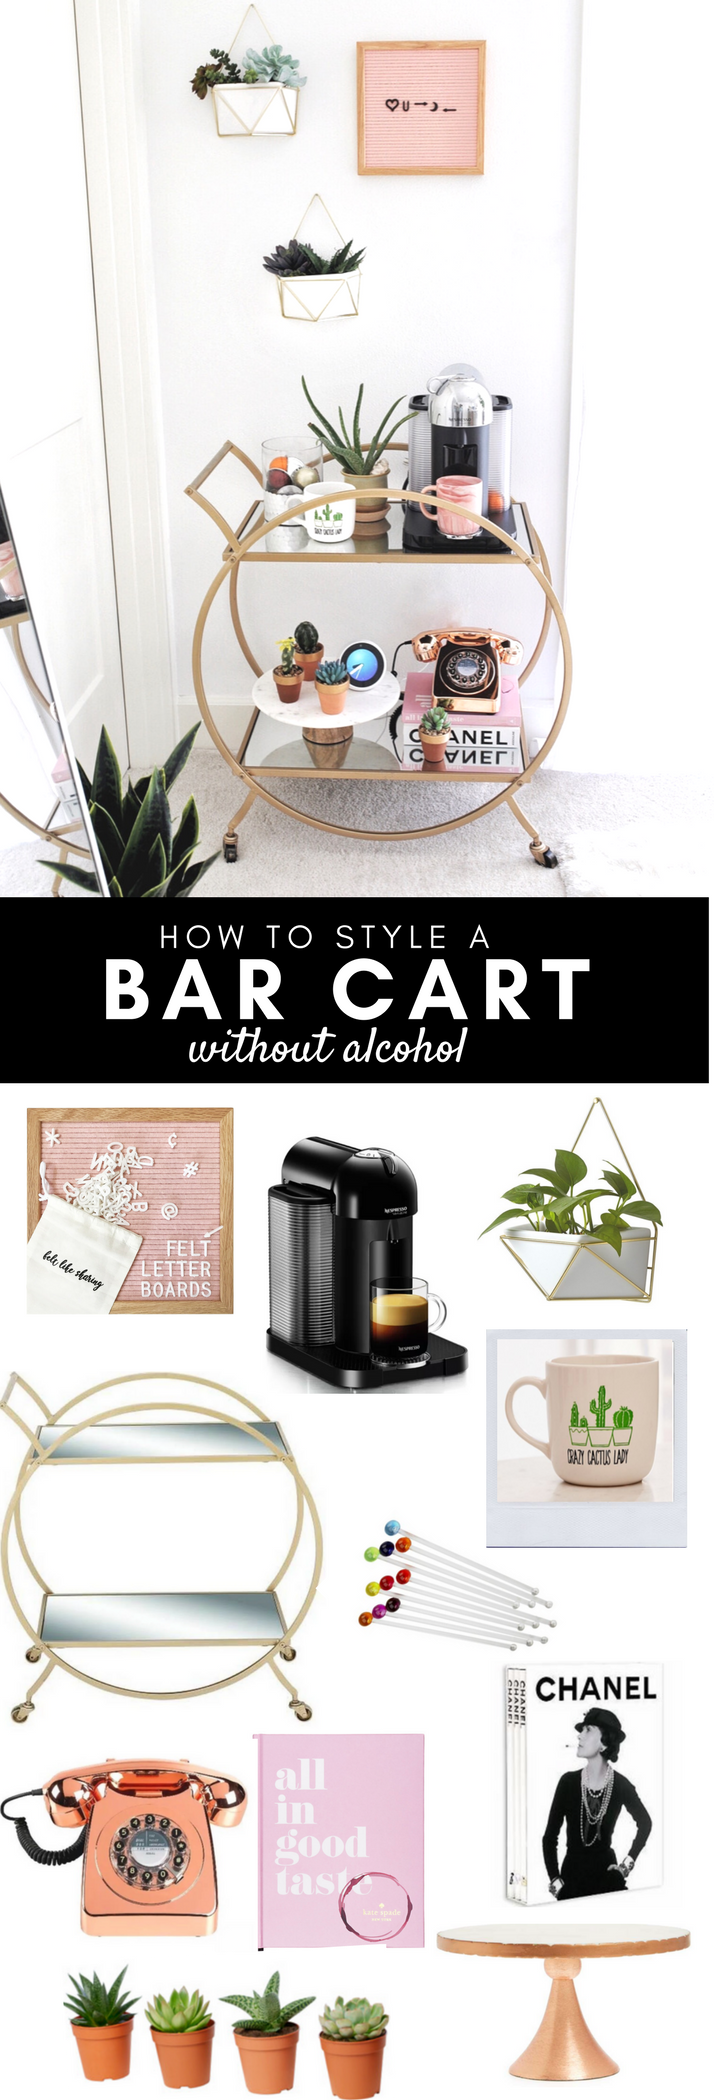 Best Bar cart decor idea | Non Alcohol bar, Bar cart styling, non traditional bar cart styling | Gypsy Tan